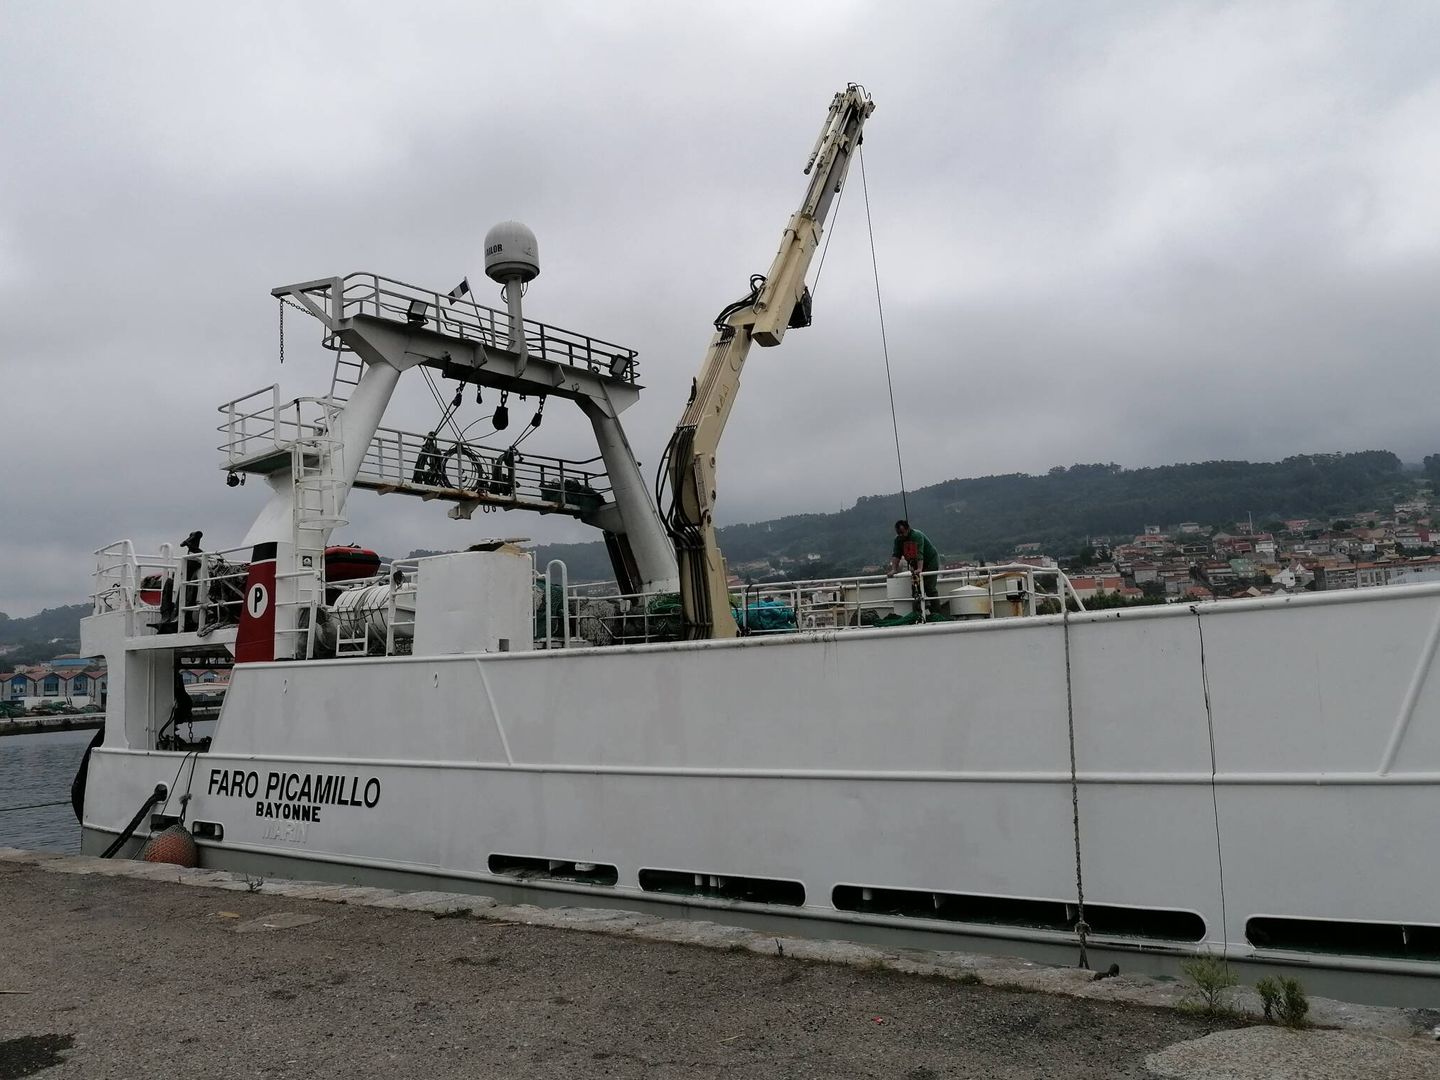 Barco de pesca de arrastre atracado en el puerto de Marín, Pontevedra. (Lino Vargas)